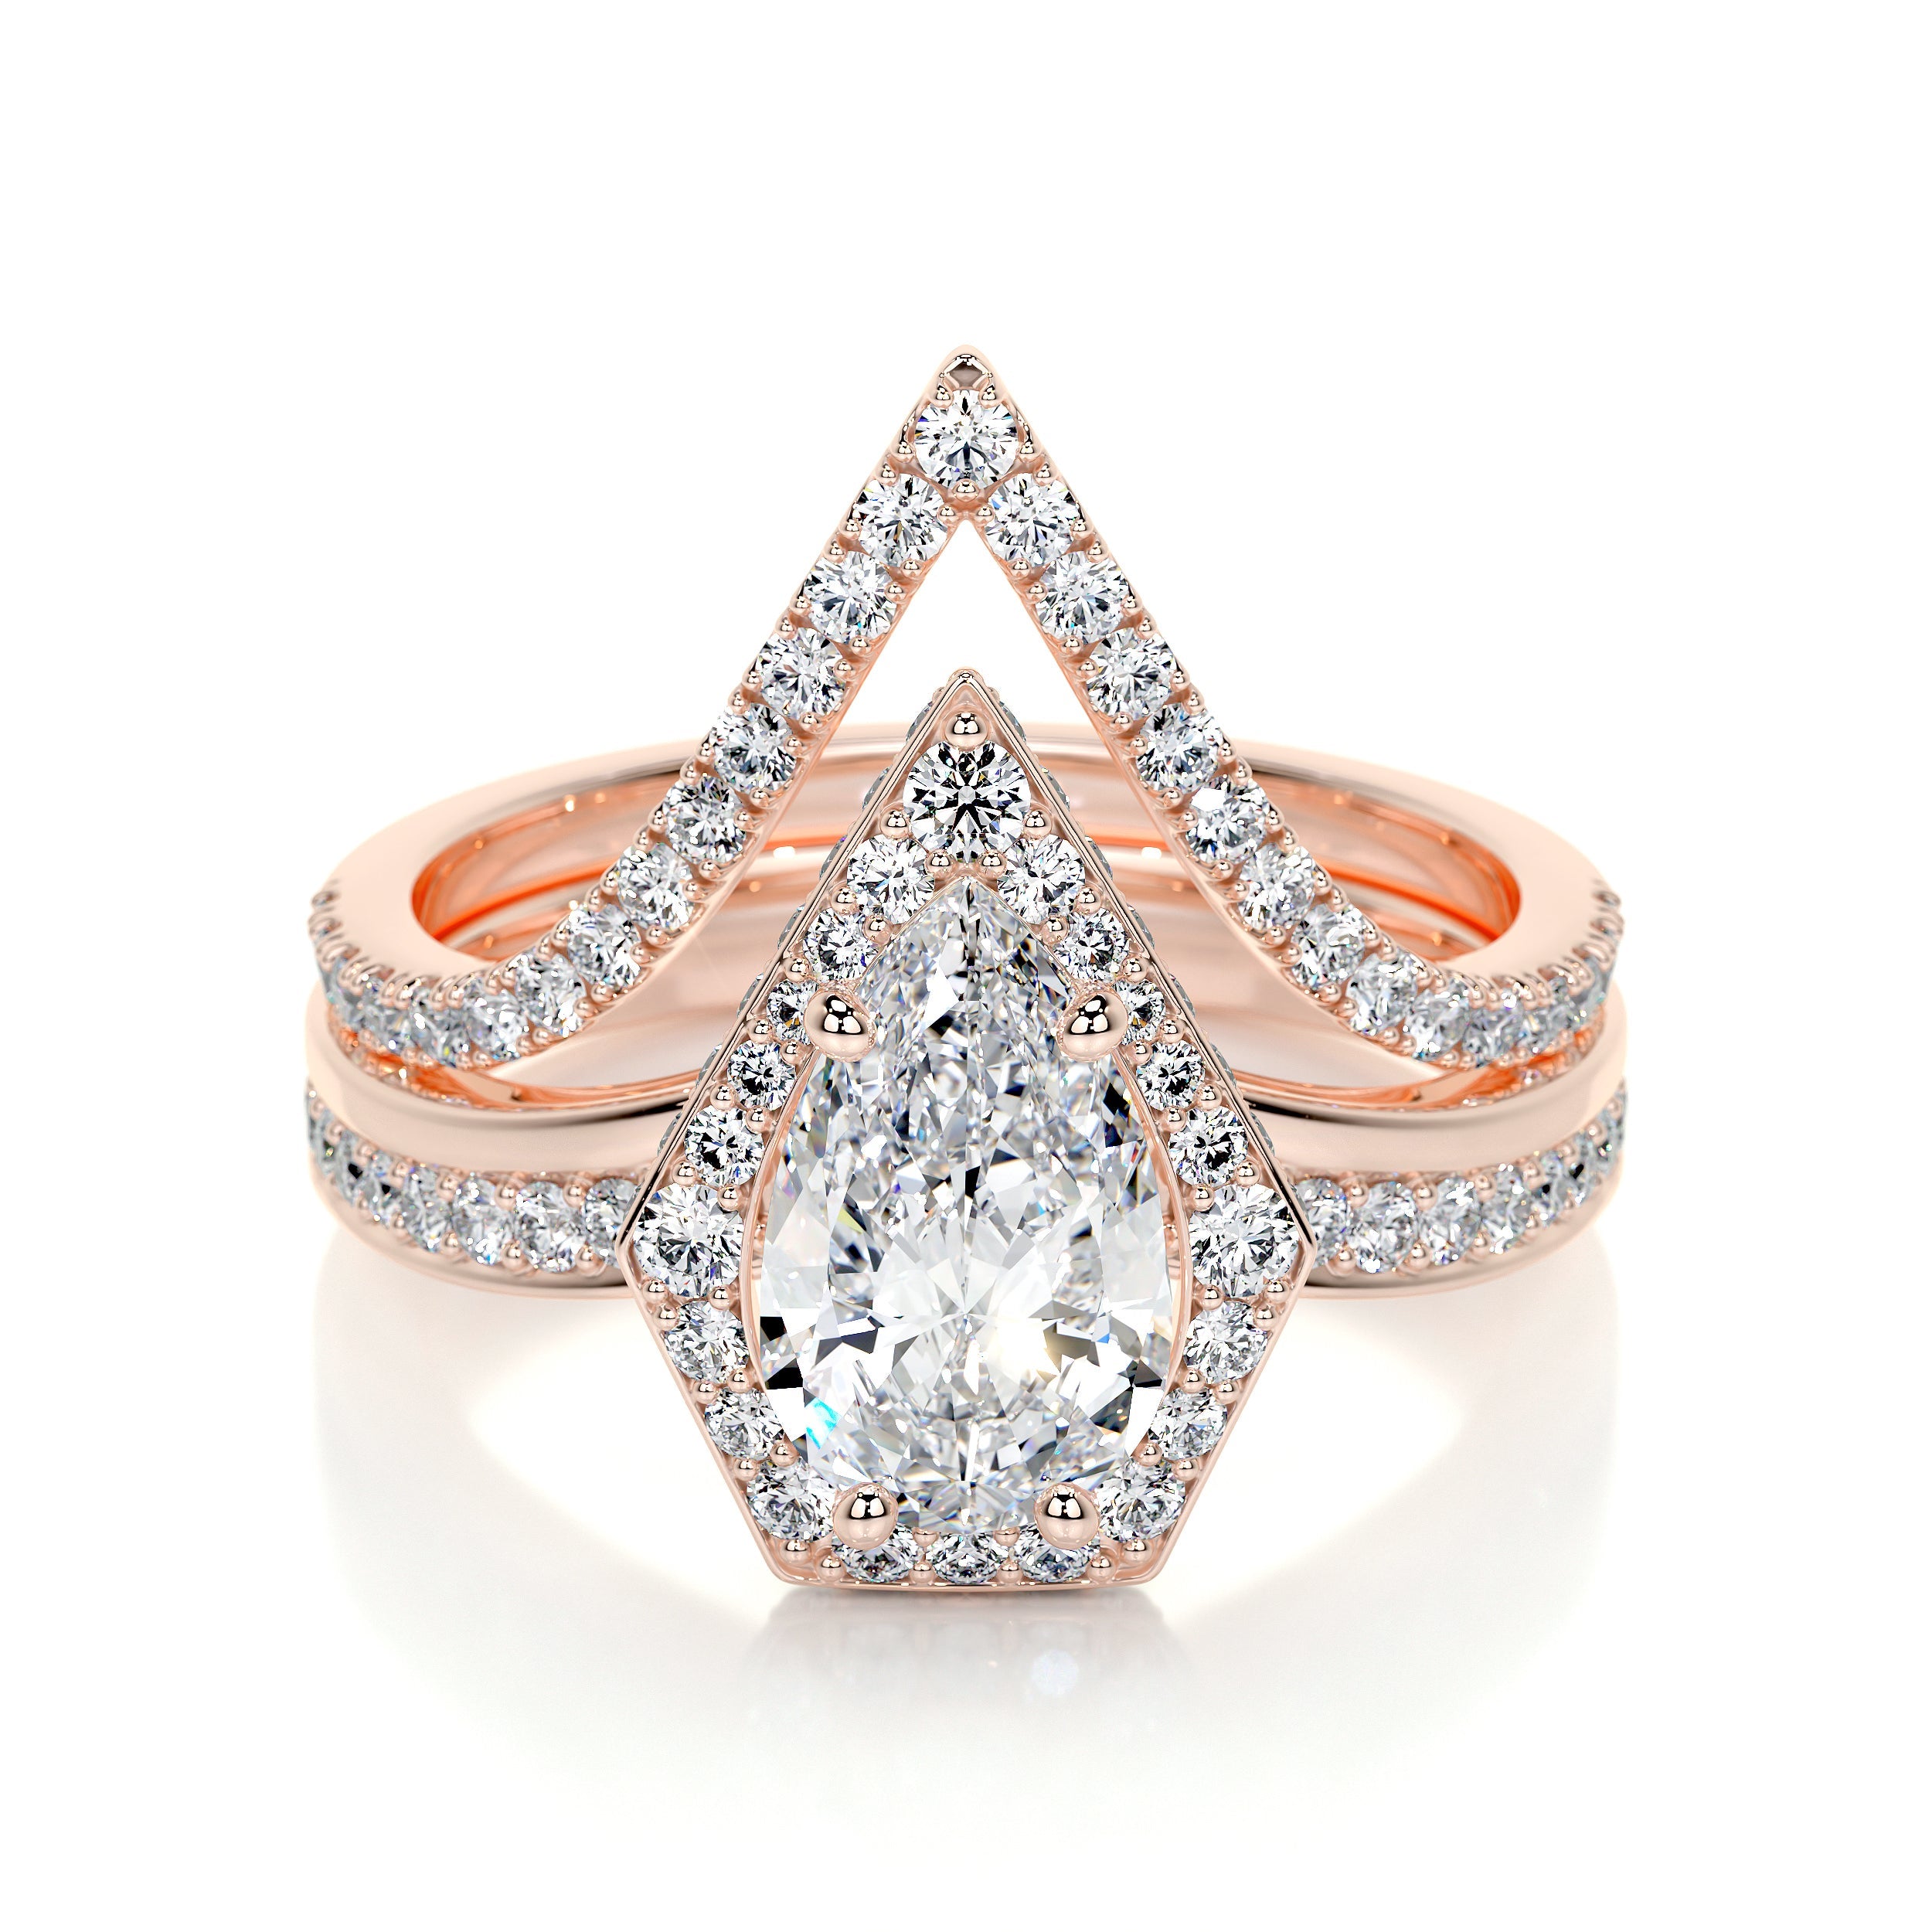 Kendall Lab Grown Diamond Bridal Set   (2.5 Carat) -14K Rose Gold